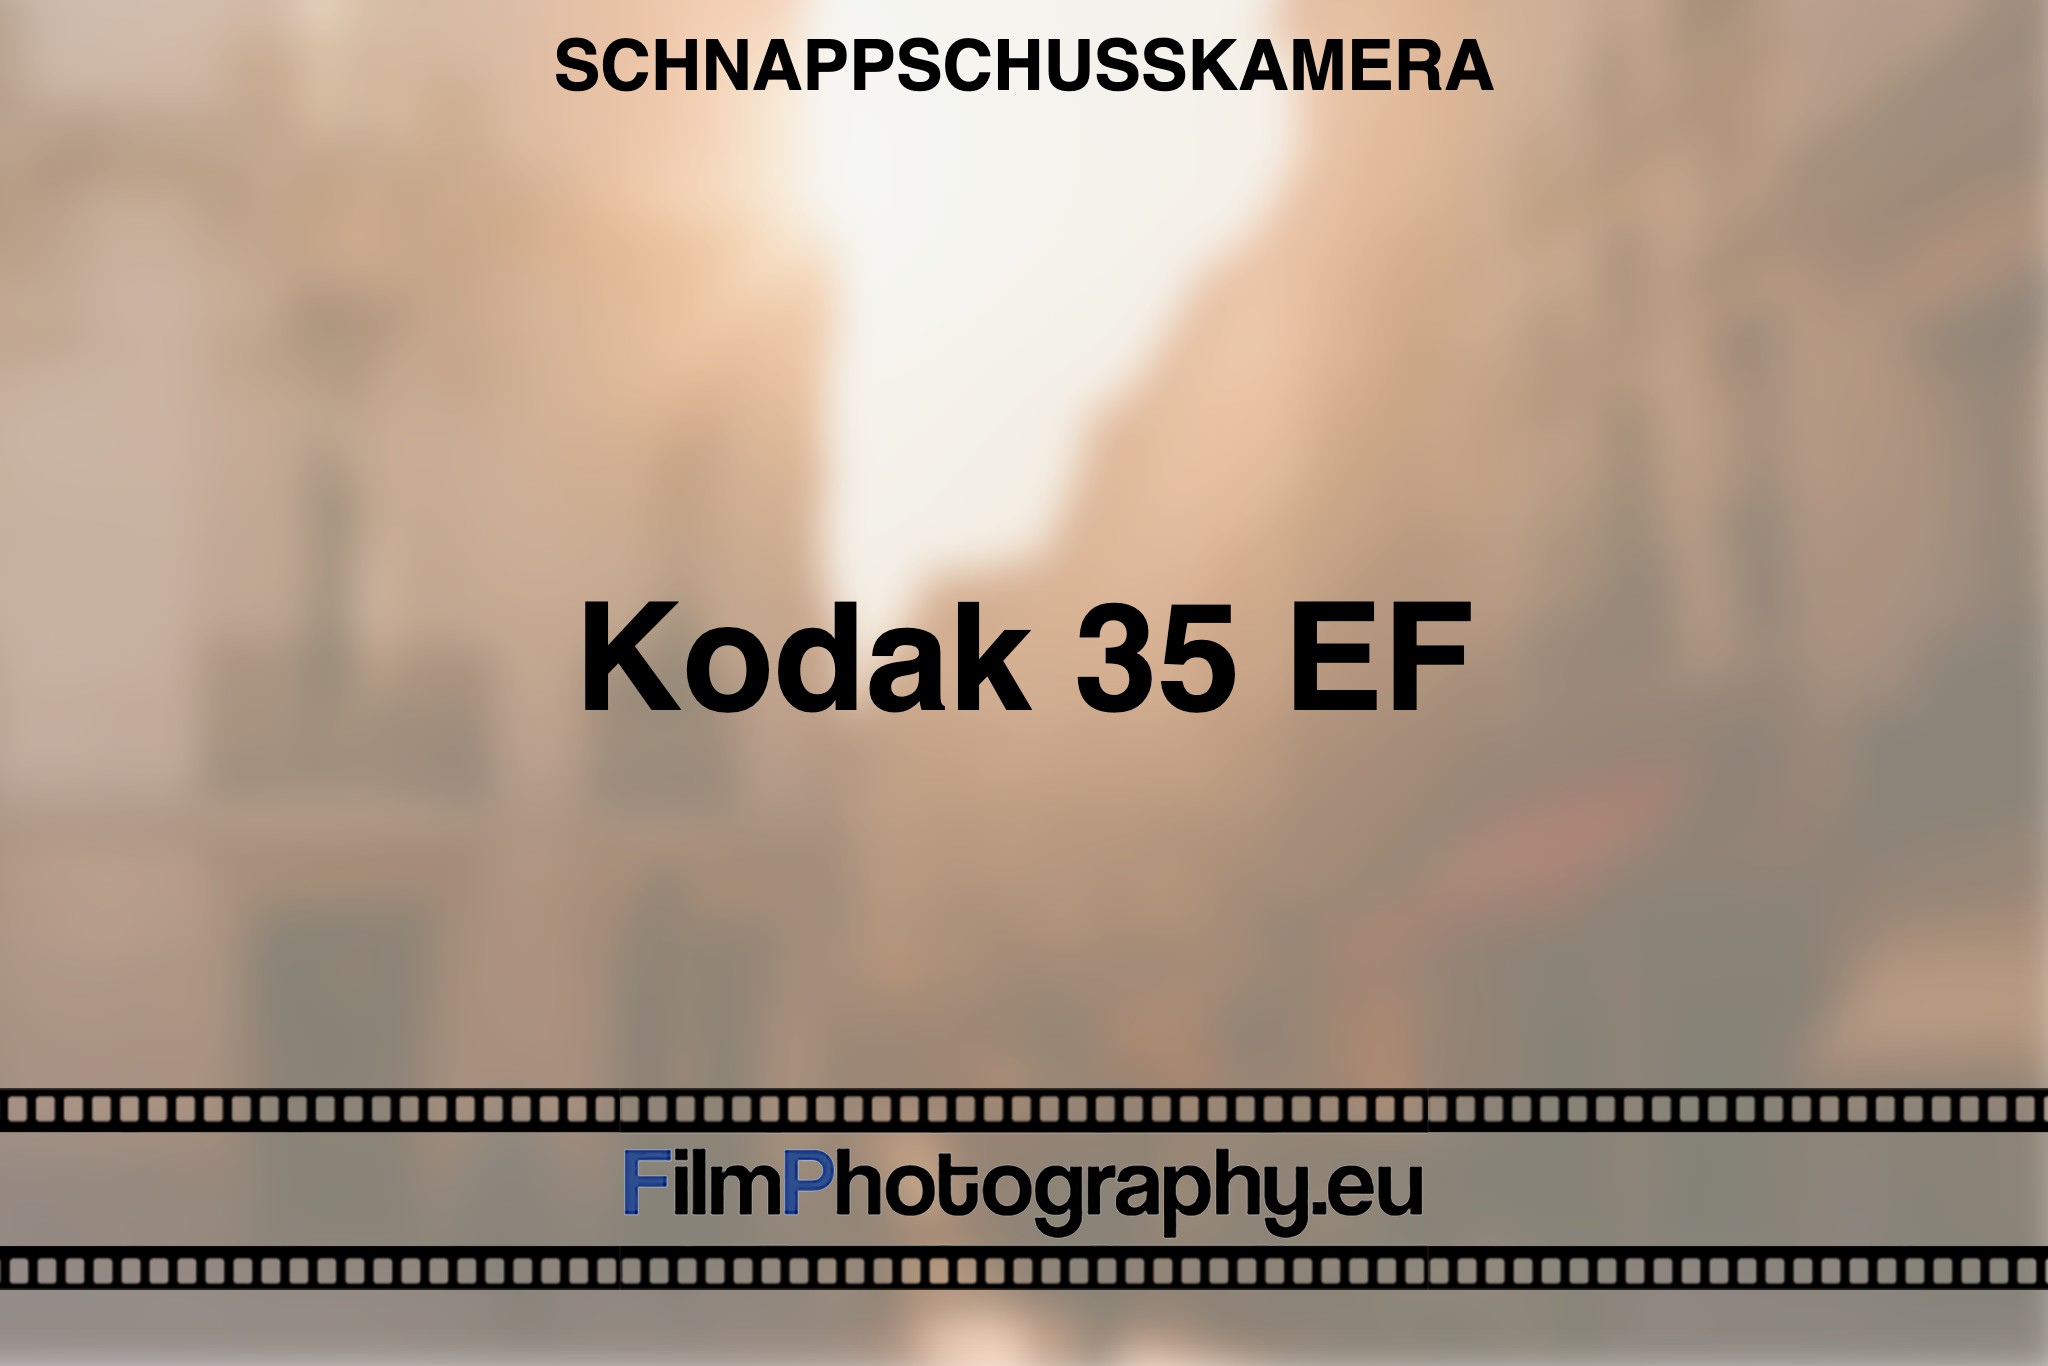 kodak-35-ef-schnappschusskamera-bnv